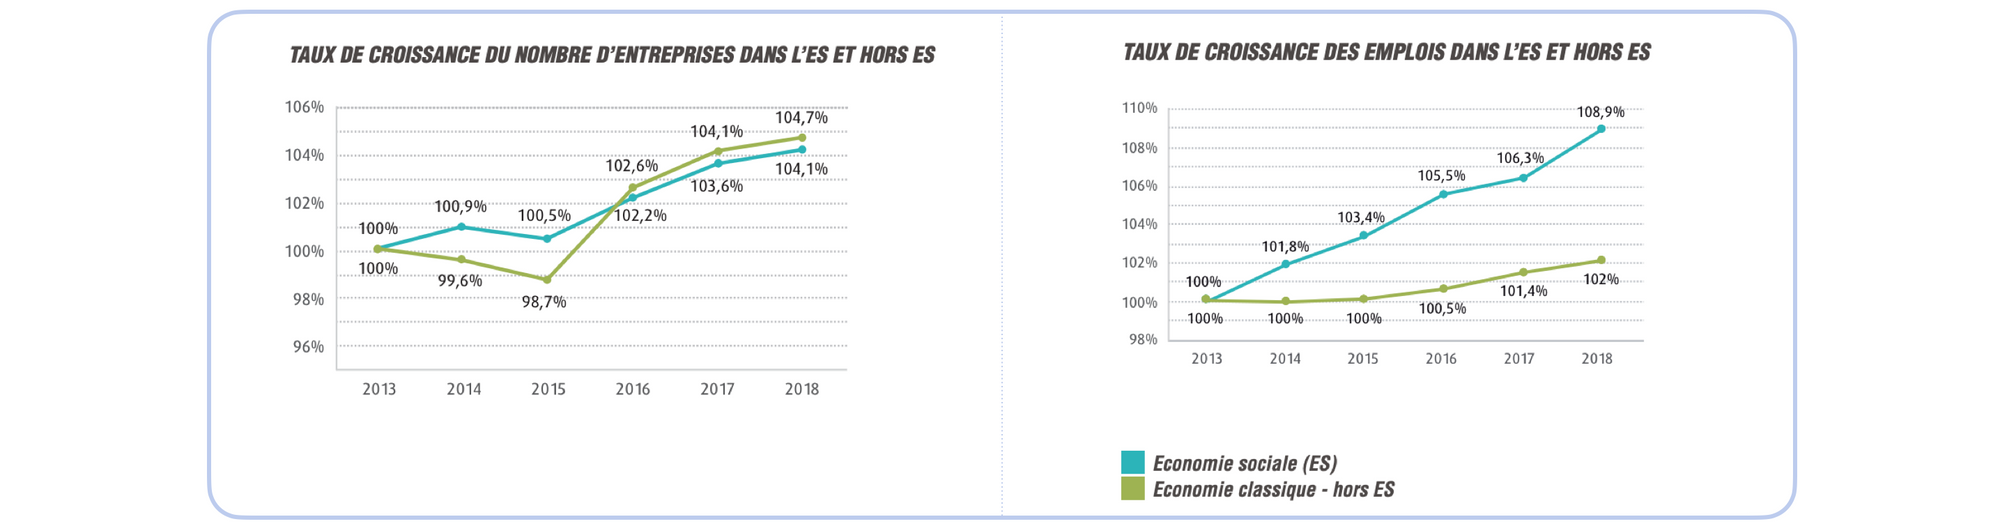 Source : Observatoire de l’Économie Sociale, Les Cahiers de l’Observatoire n°15, Mars 2020.